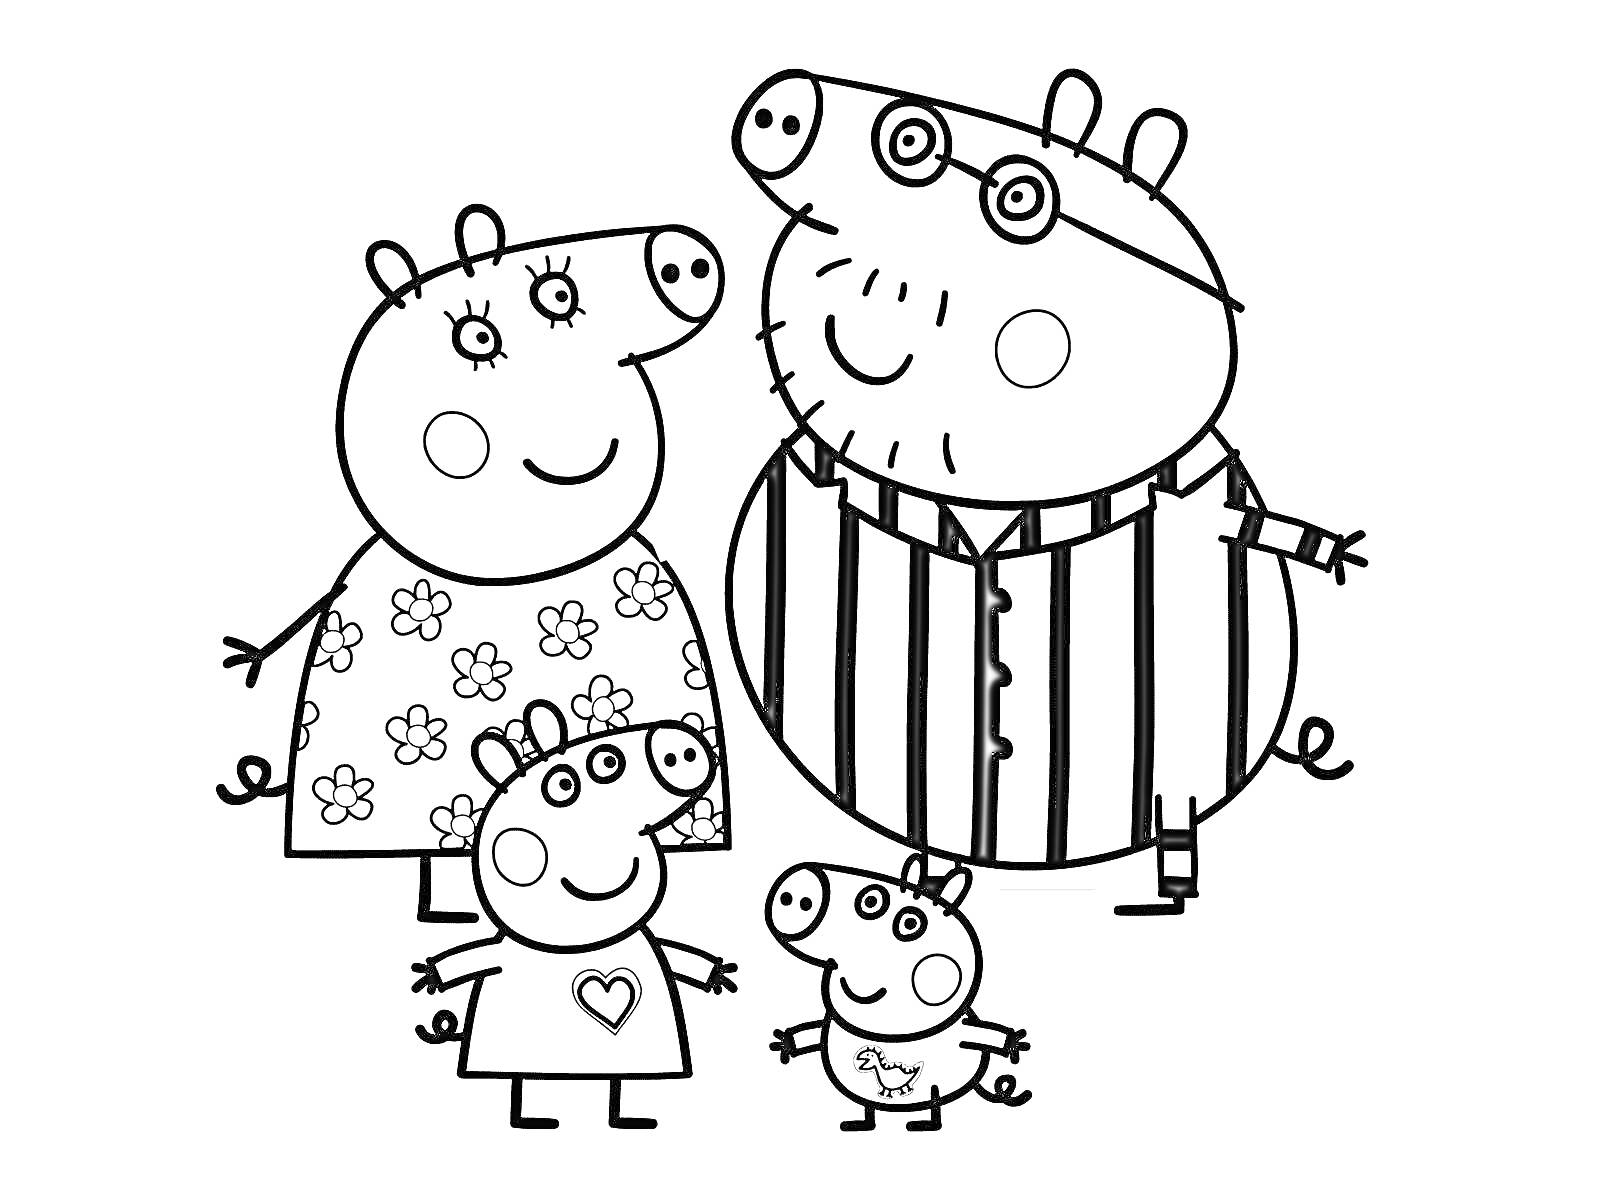 Семья из четырех свинок — мама в платье с цветами, папа в полосатой рубашке, две маленькие свинки, одна в платье с сердечком, другая с динозавром